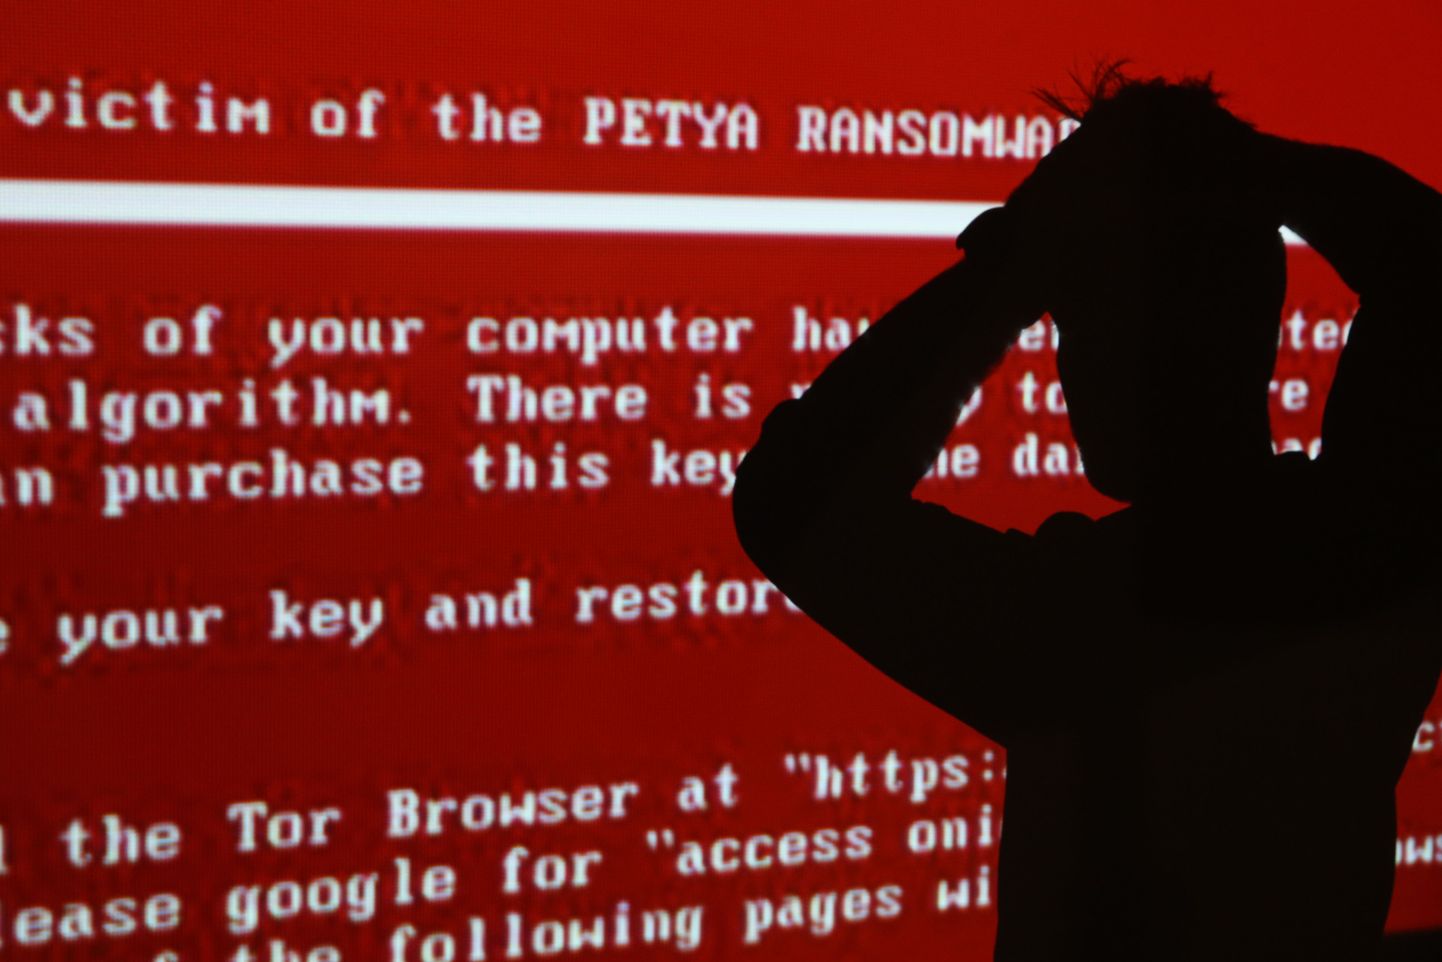 Palju pahandust teinud Petya nimelise viiruse poolt arvutiekraanidele kuvatud teade.